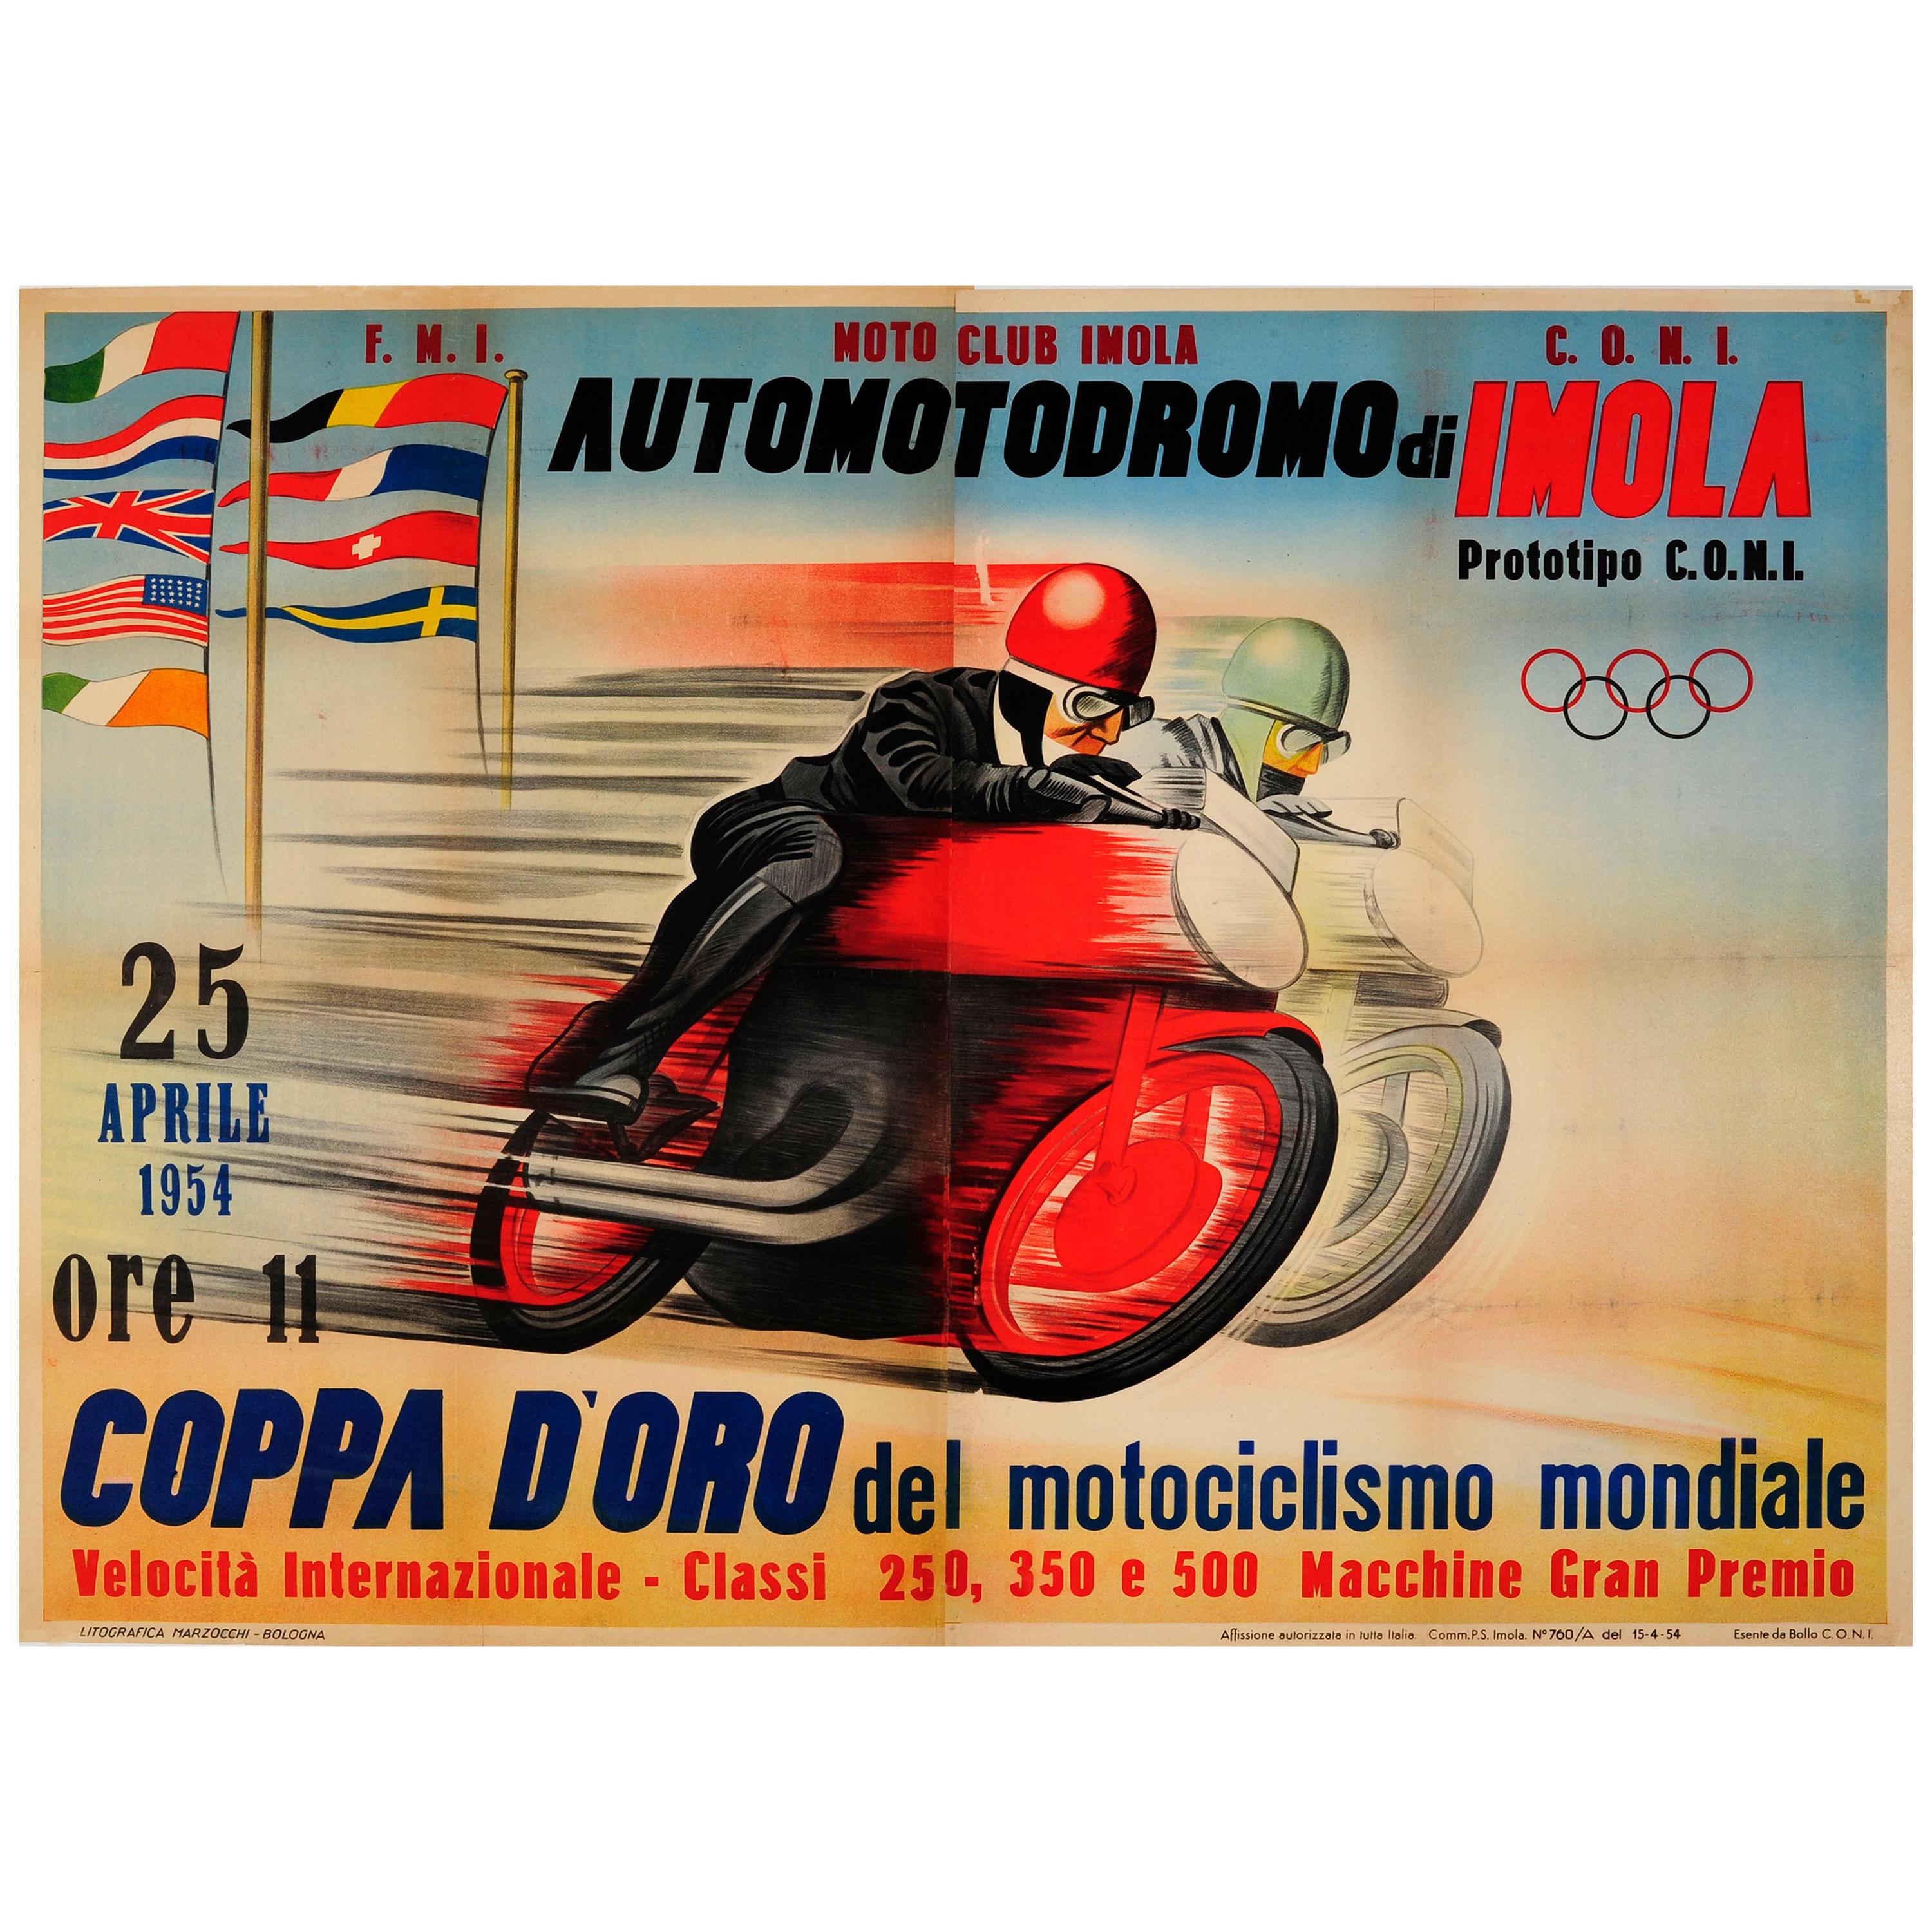 Original Vintage Motorcycle Racing Poster for Automotodromo Di Imola Coppa D'Oro